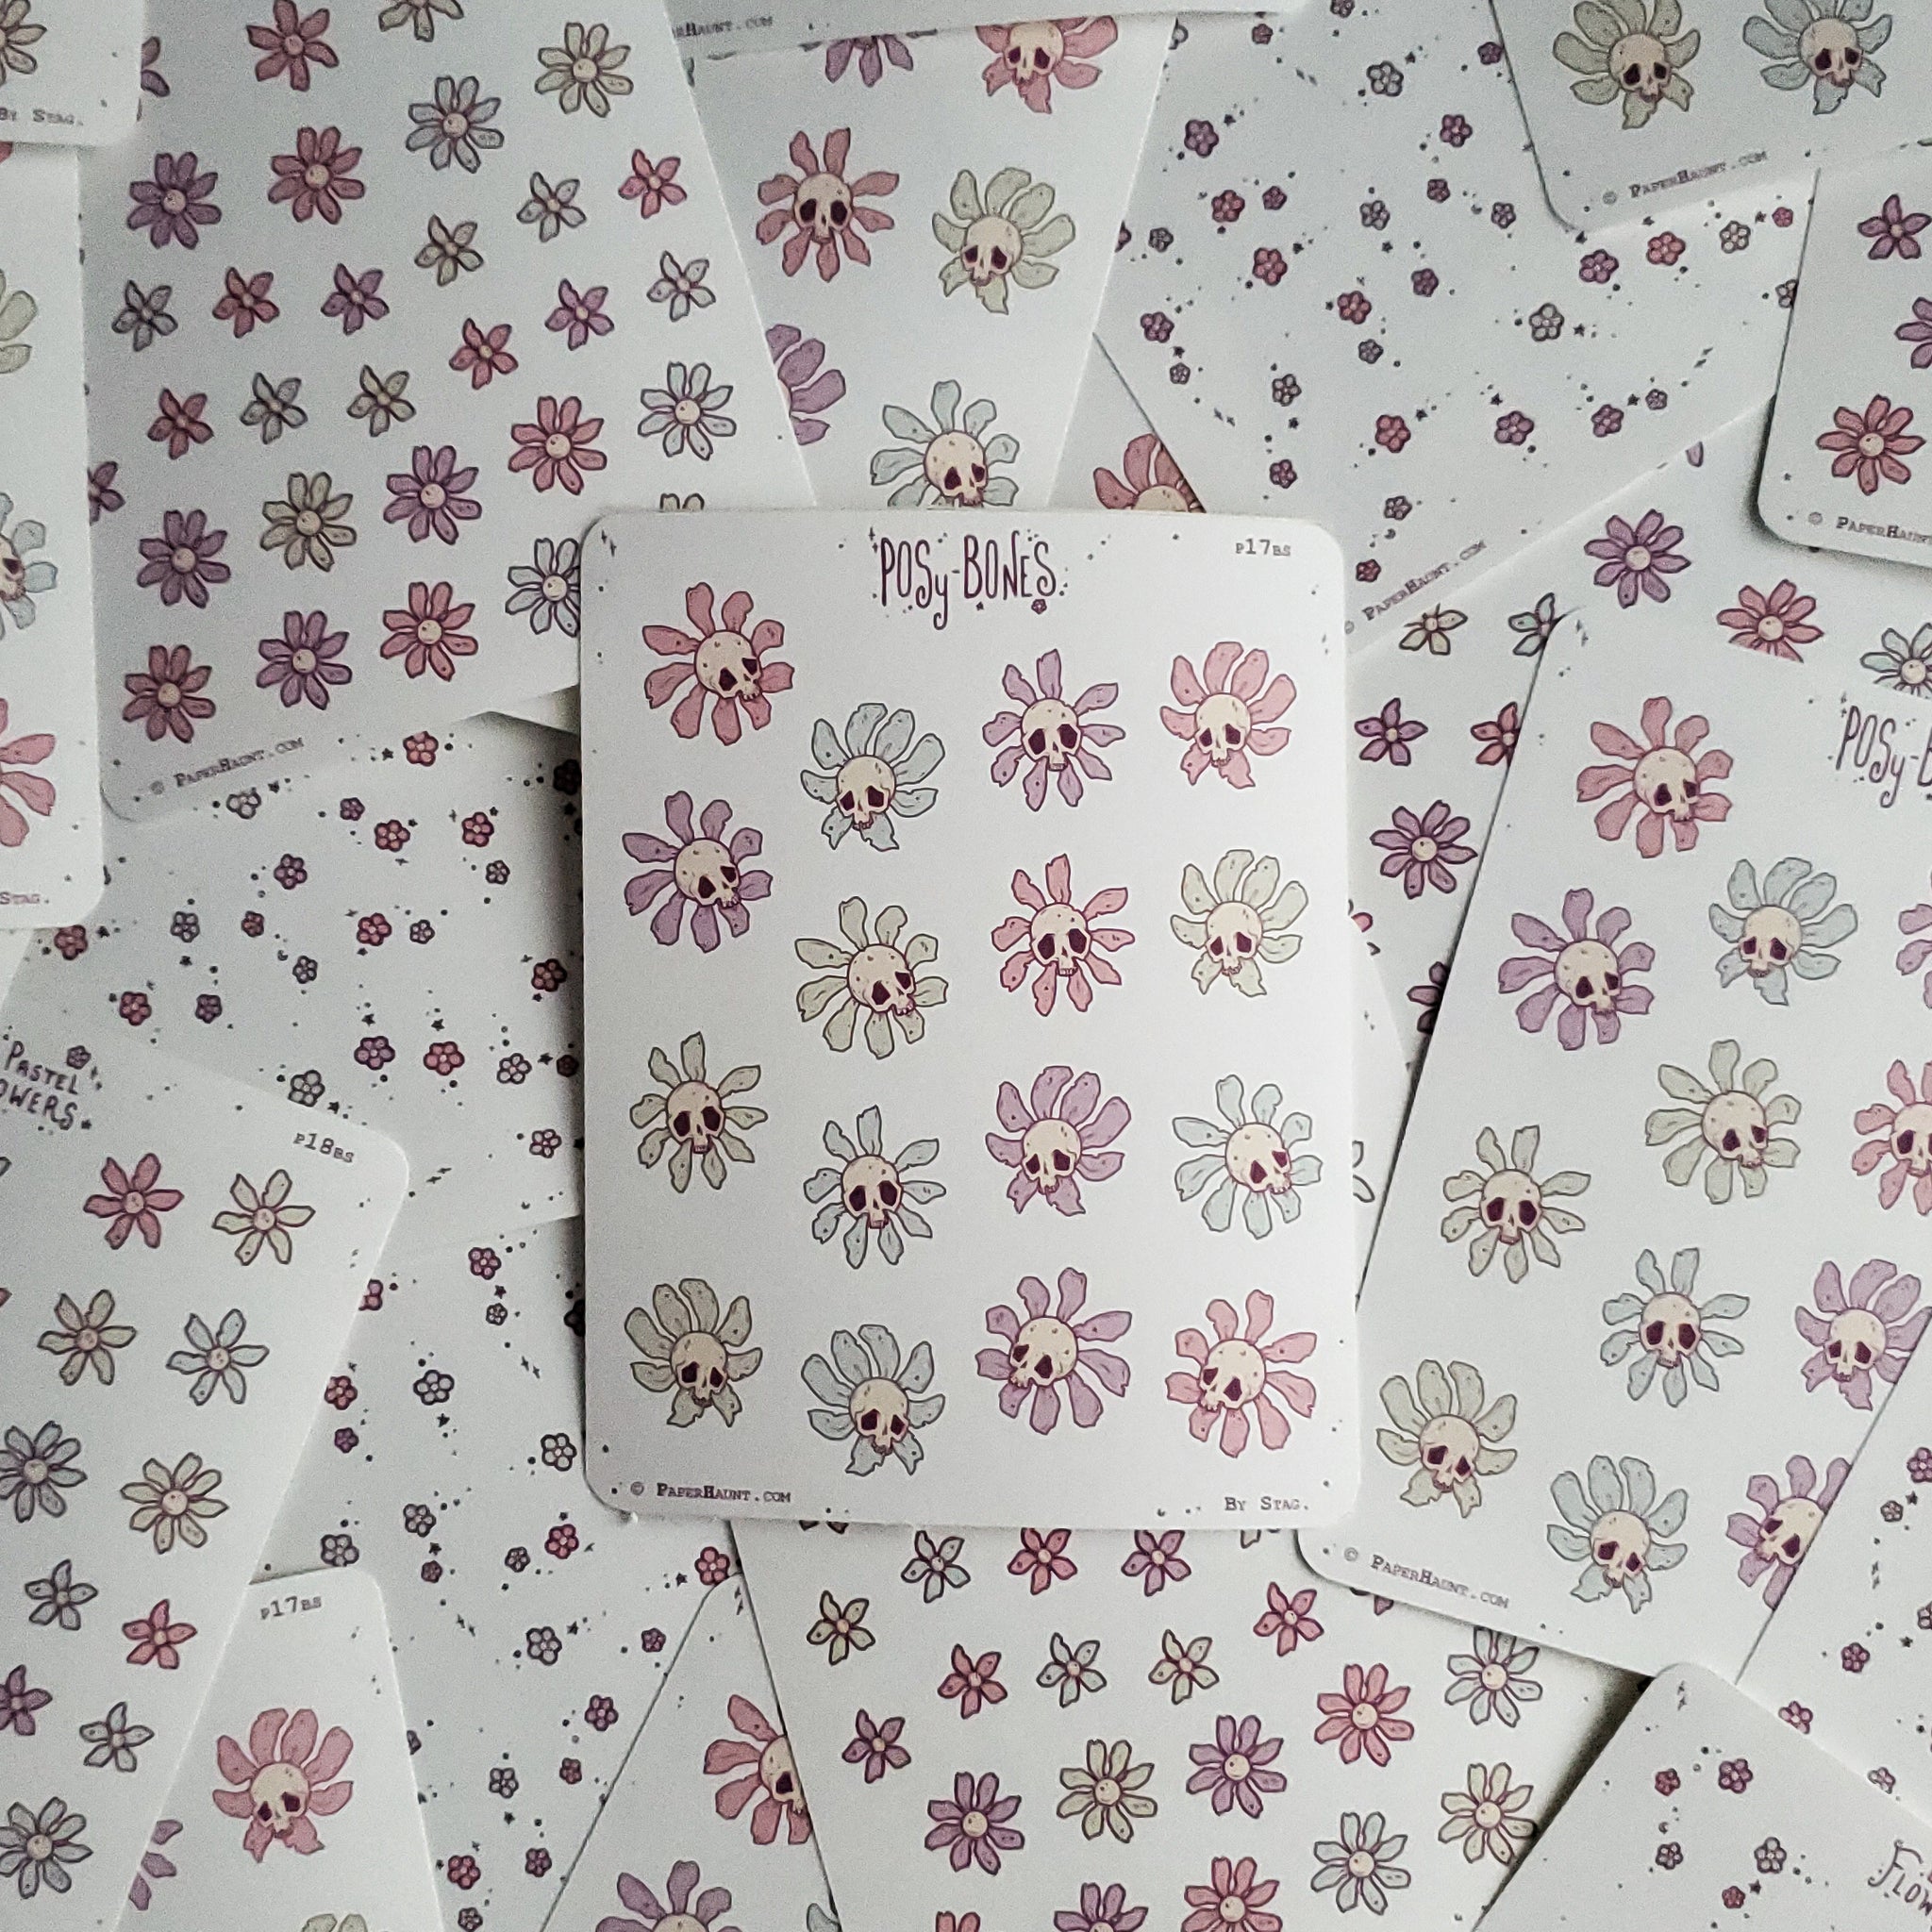 Pastel Skull Flower sticker sheets